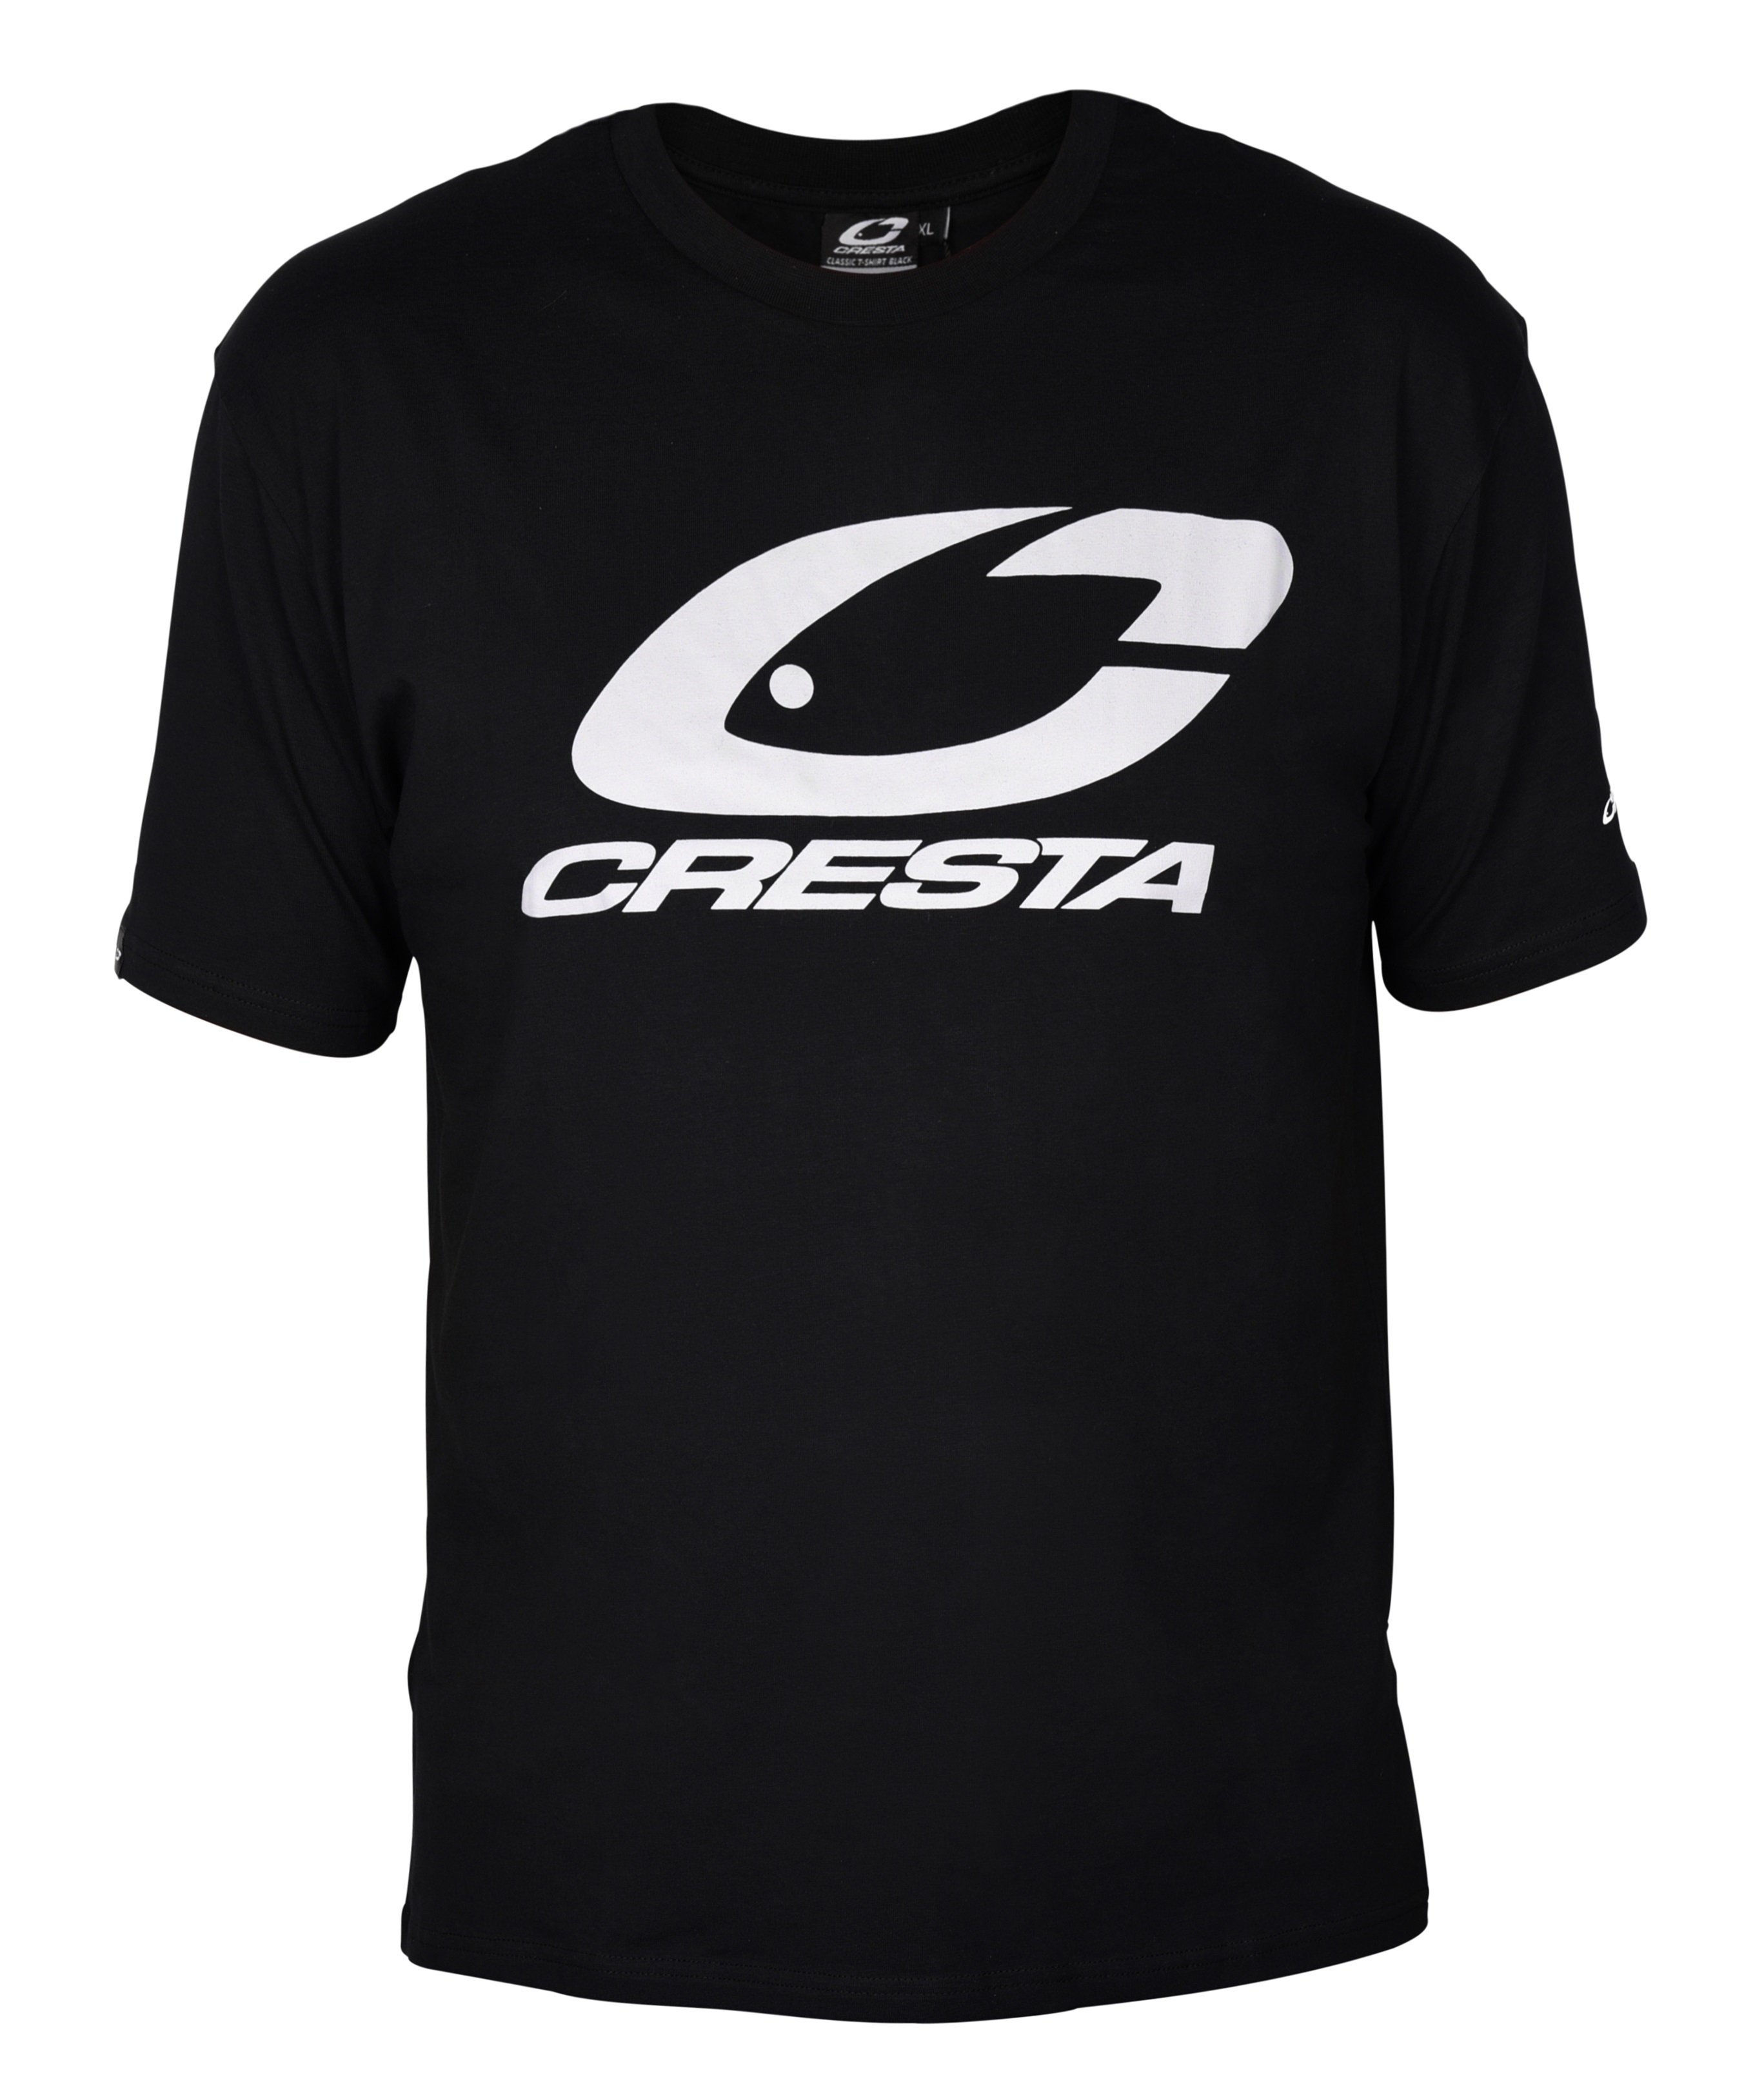 Cresta Classic Camiseta Negra